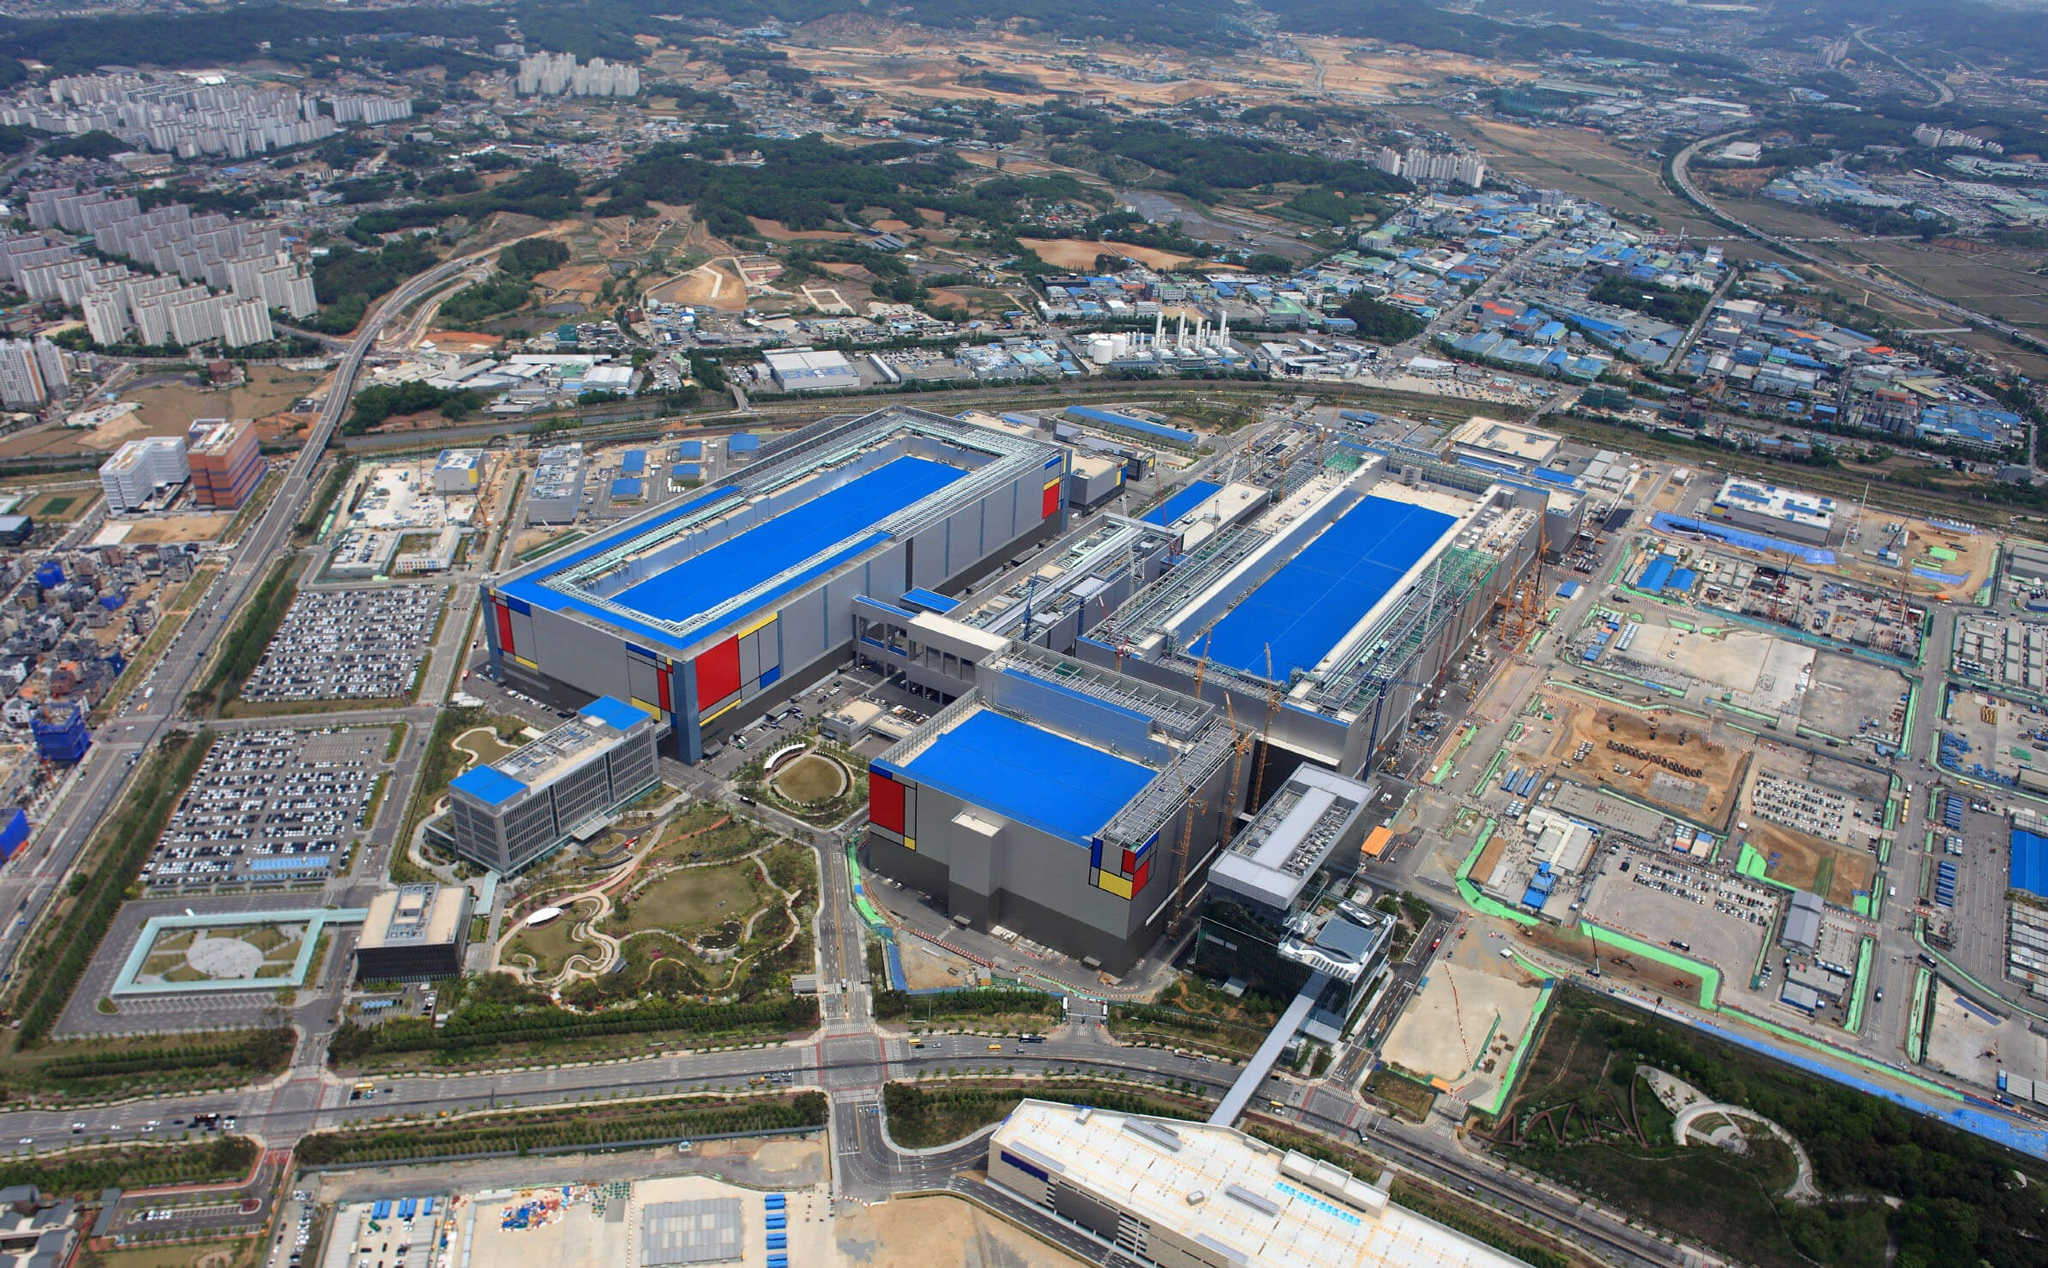 Samsung ôm mộng trở thành nhà sản xuất bán dẫn hàng đầu thế giới, xây thêm nhà máy 5nm tại Hàn Quốc